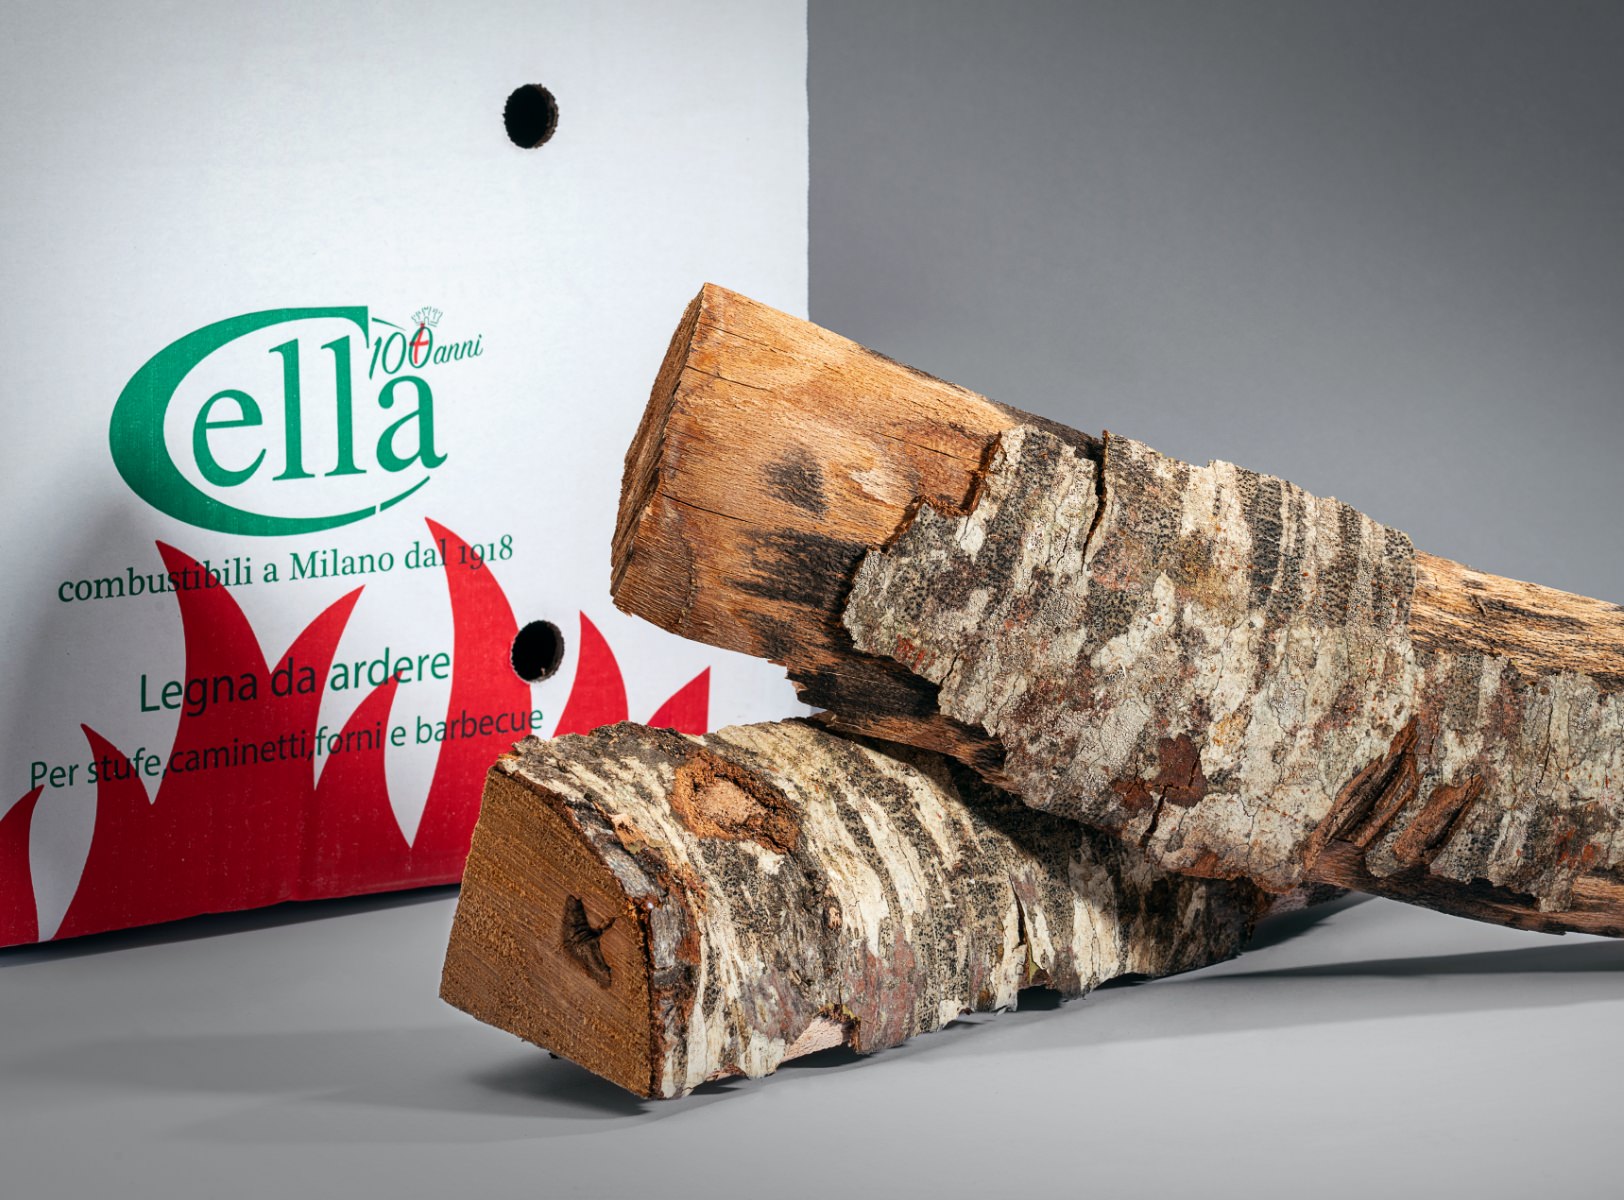 Ceppi legna da ardere per caminetto, barbecue e forni pizzeria, Cella Milano